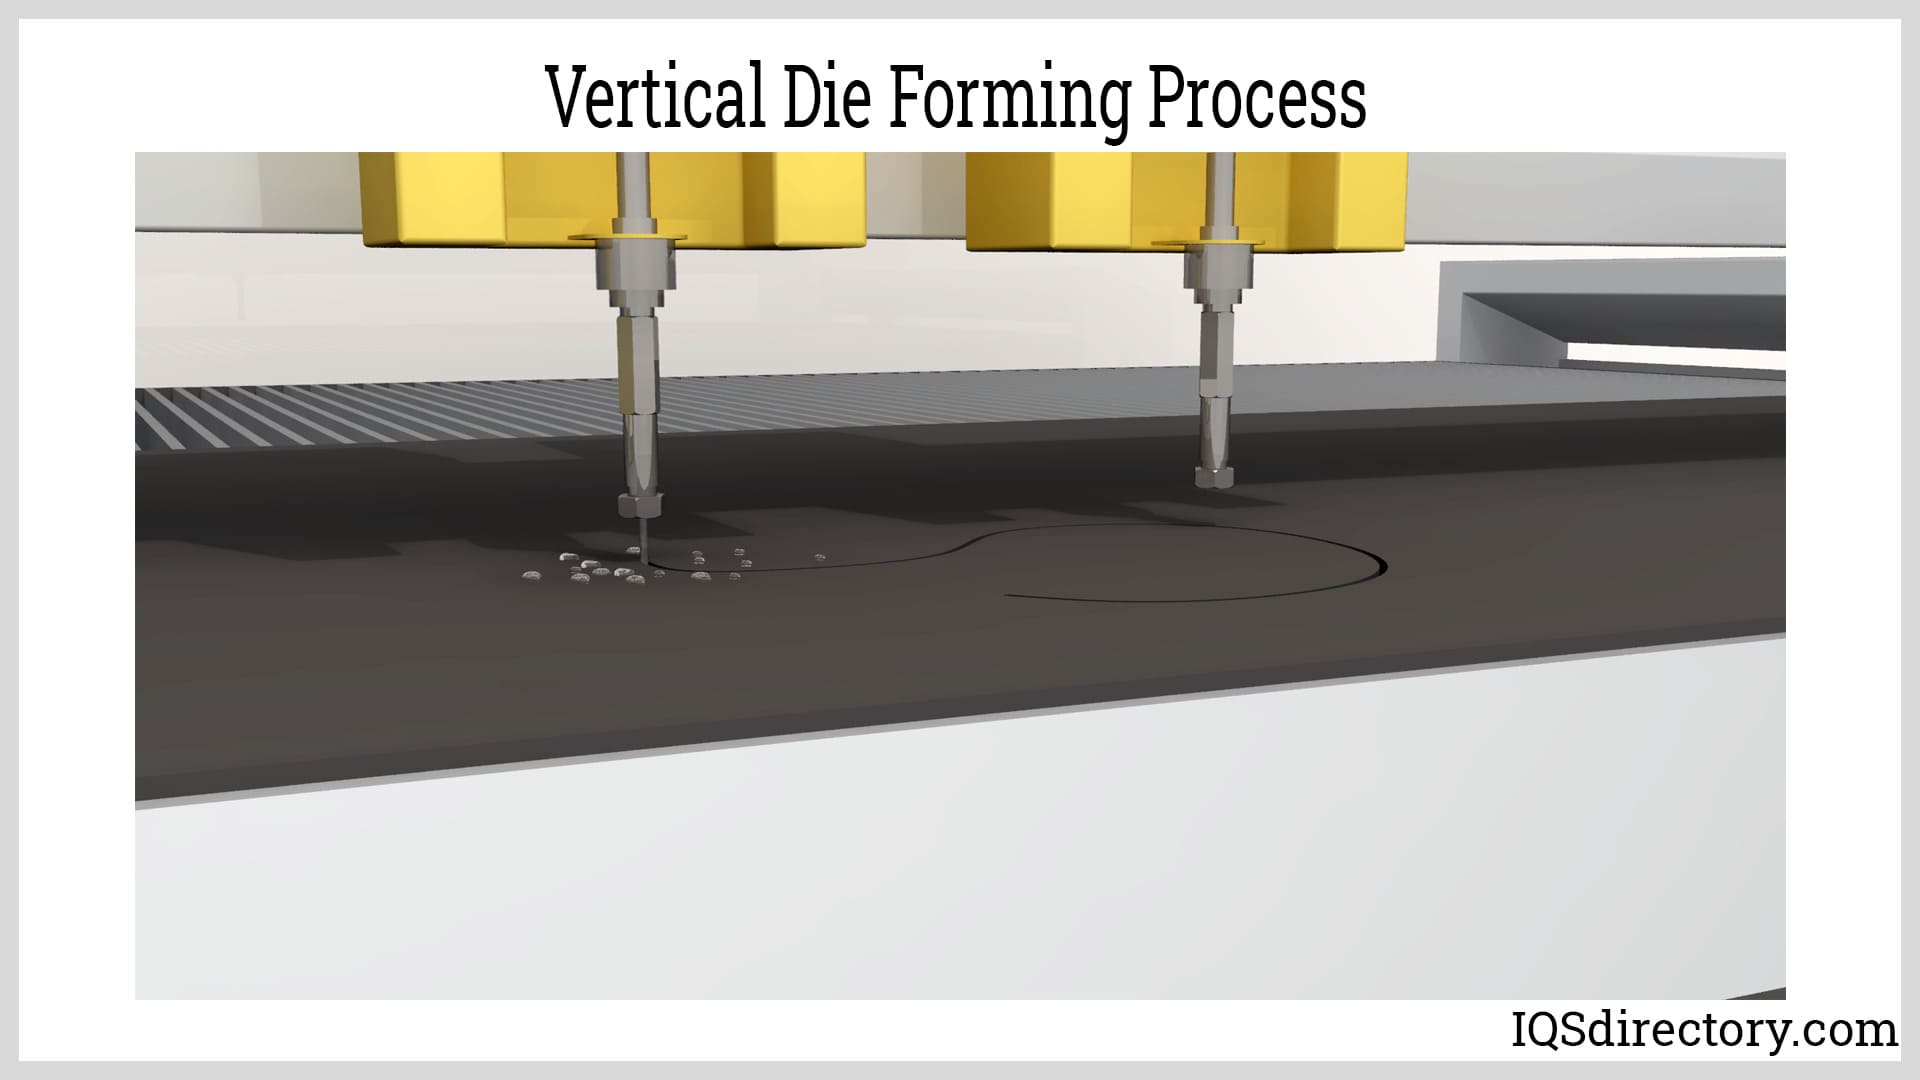 Vertical Die Forming Process